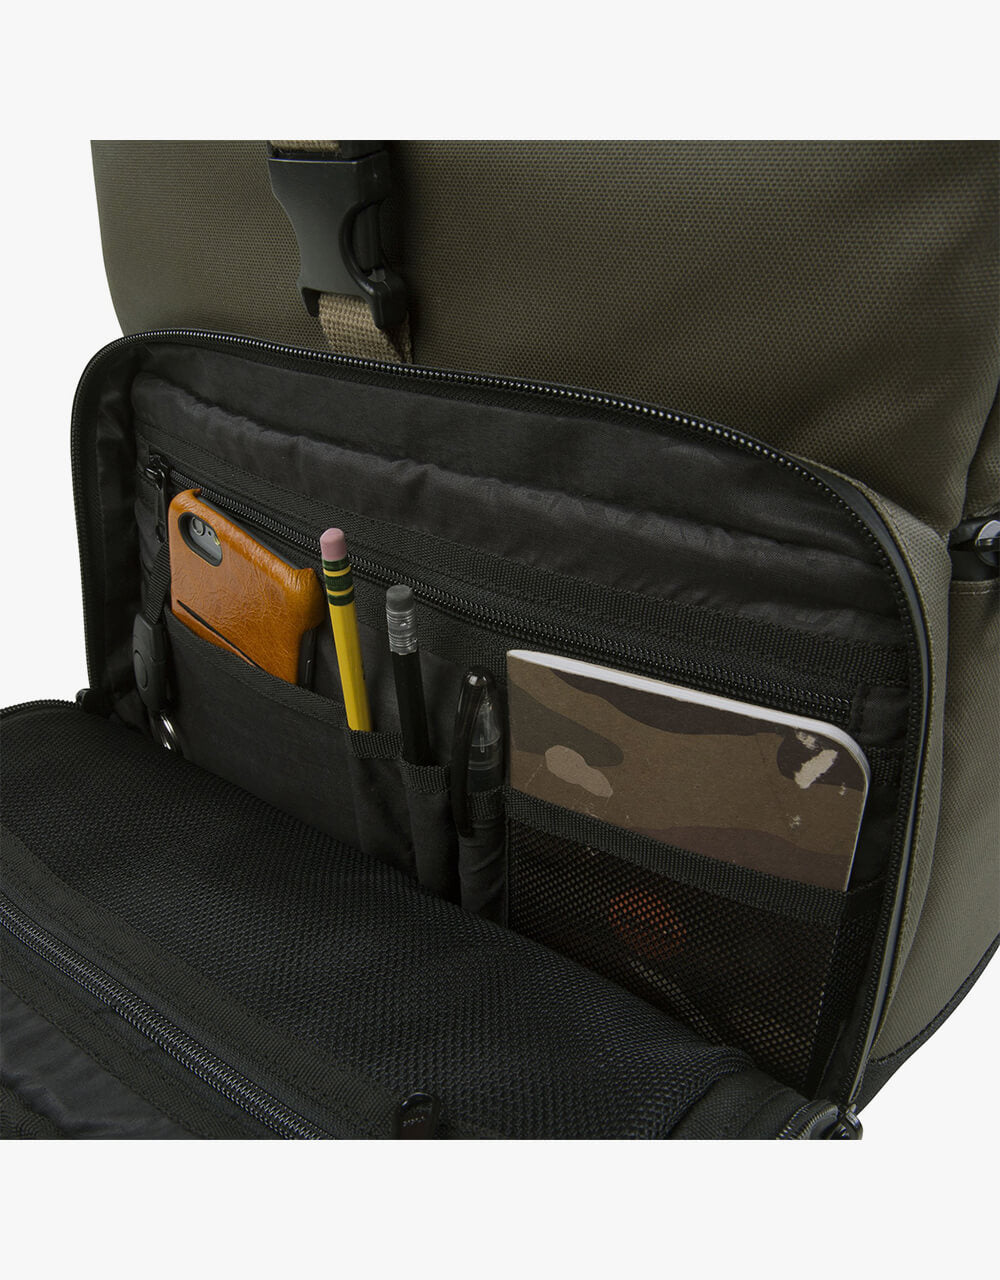 HEX Grid Medium DSLR Camera Backpack - Olive